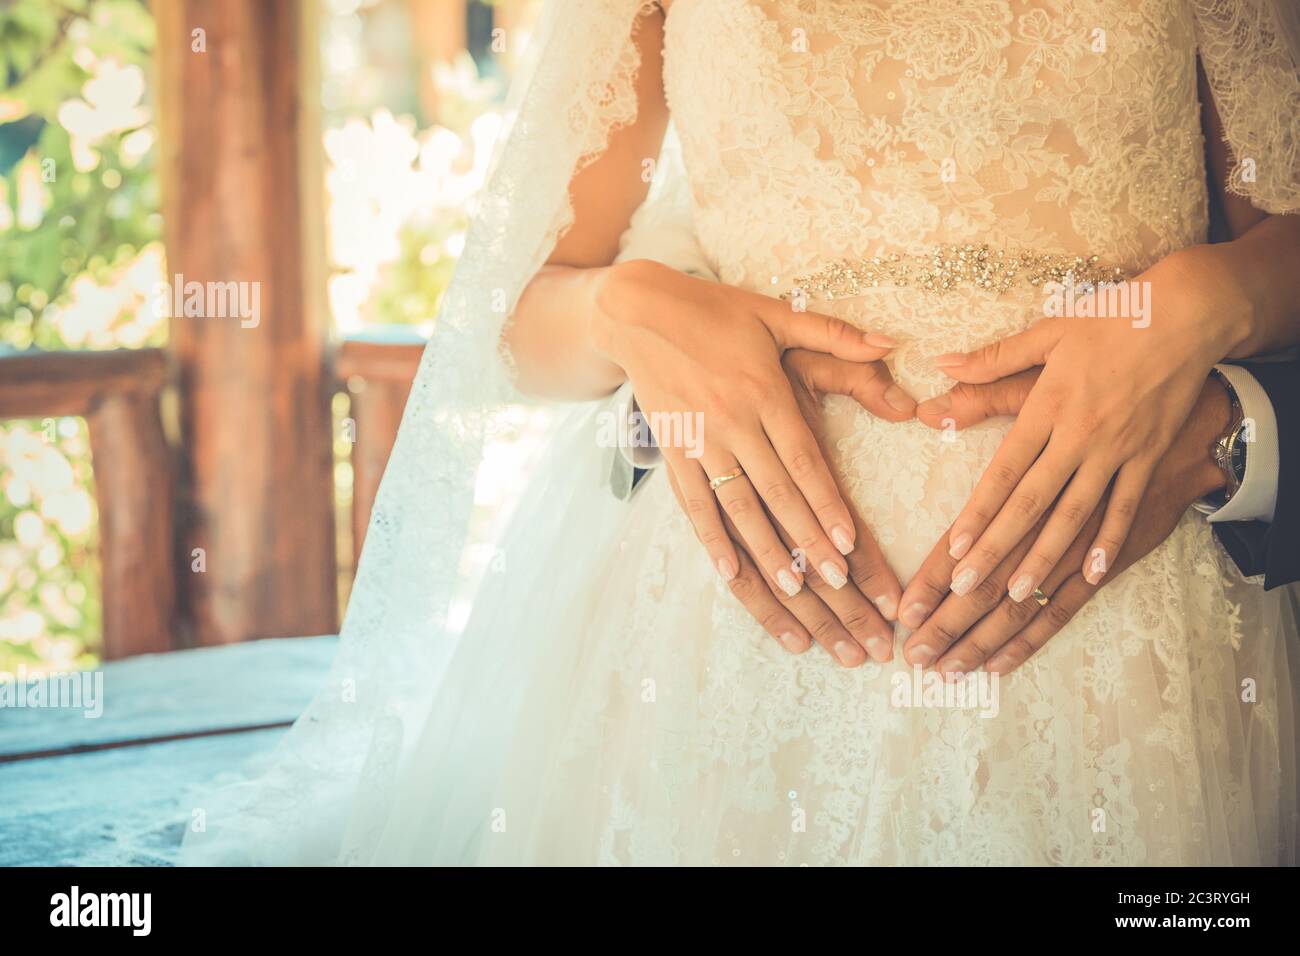 Vier Hände auf dem Bauch der schwangeren Frau. Paar posiert ein Herz mit ihren Fingern auf dem Bauch der werdende Mutter Stockfoto